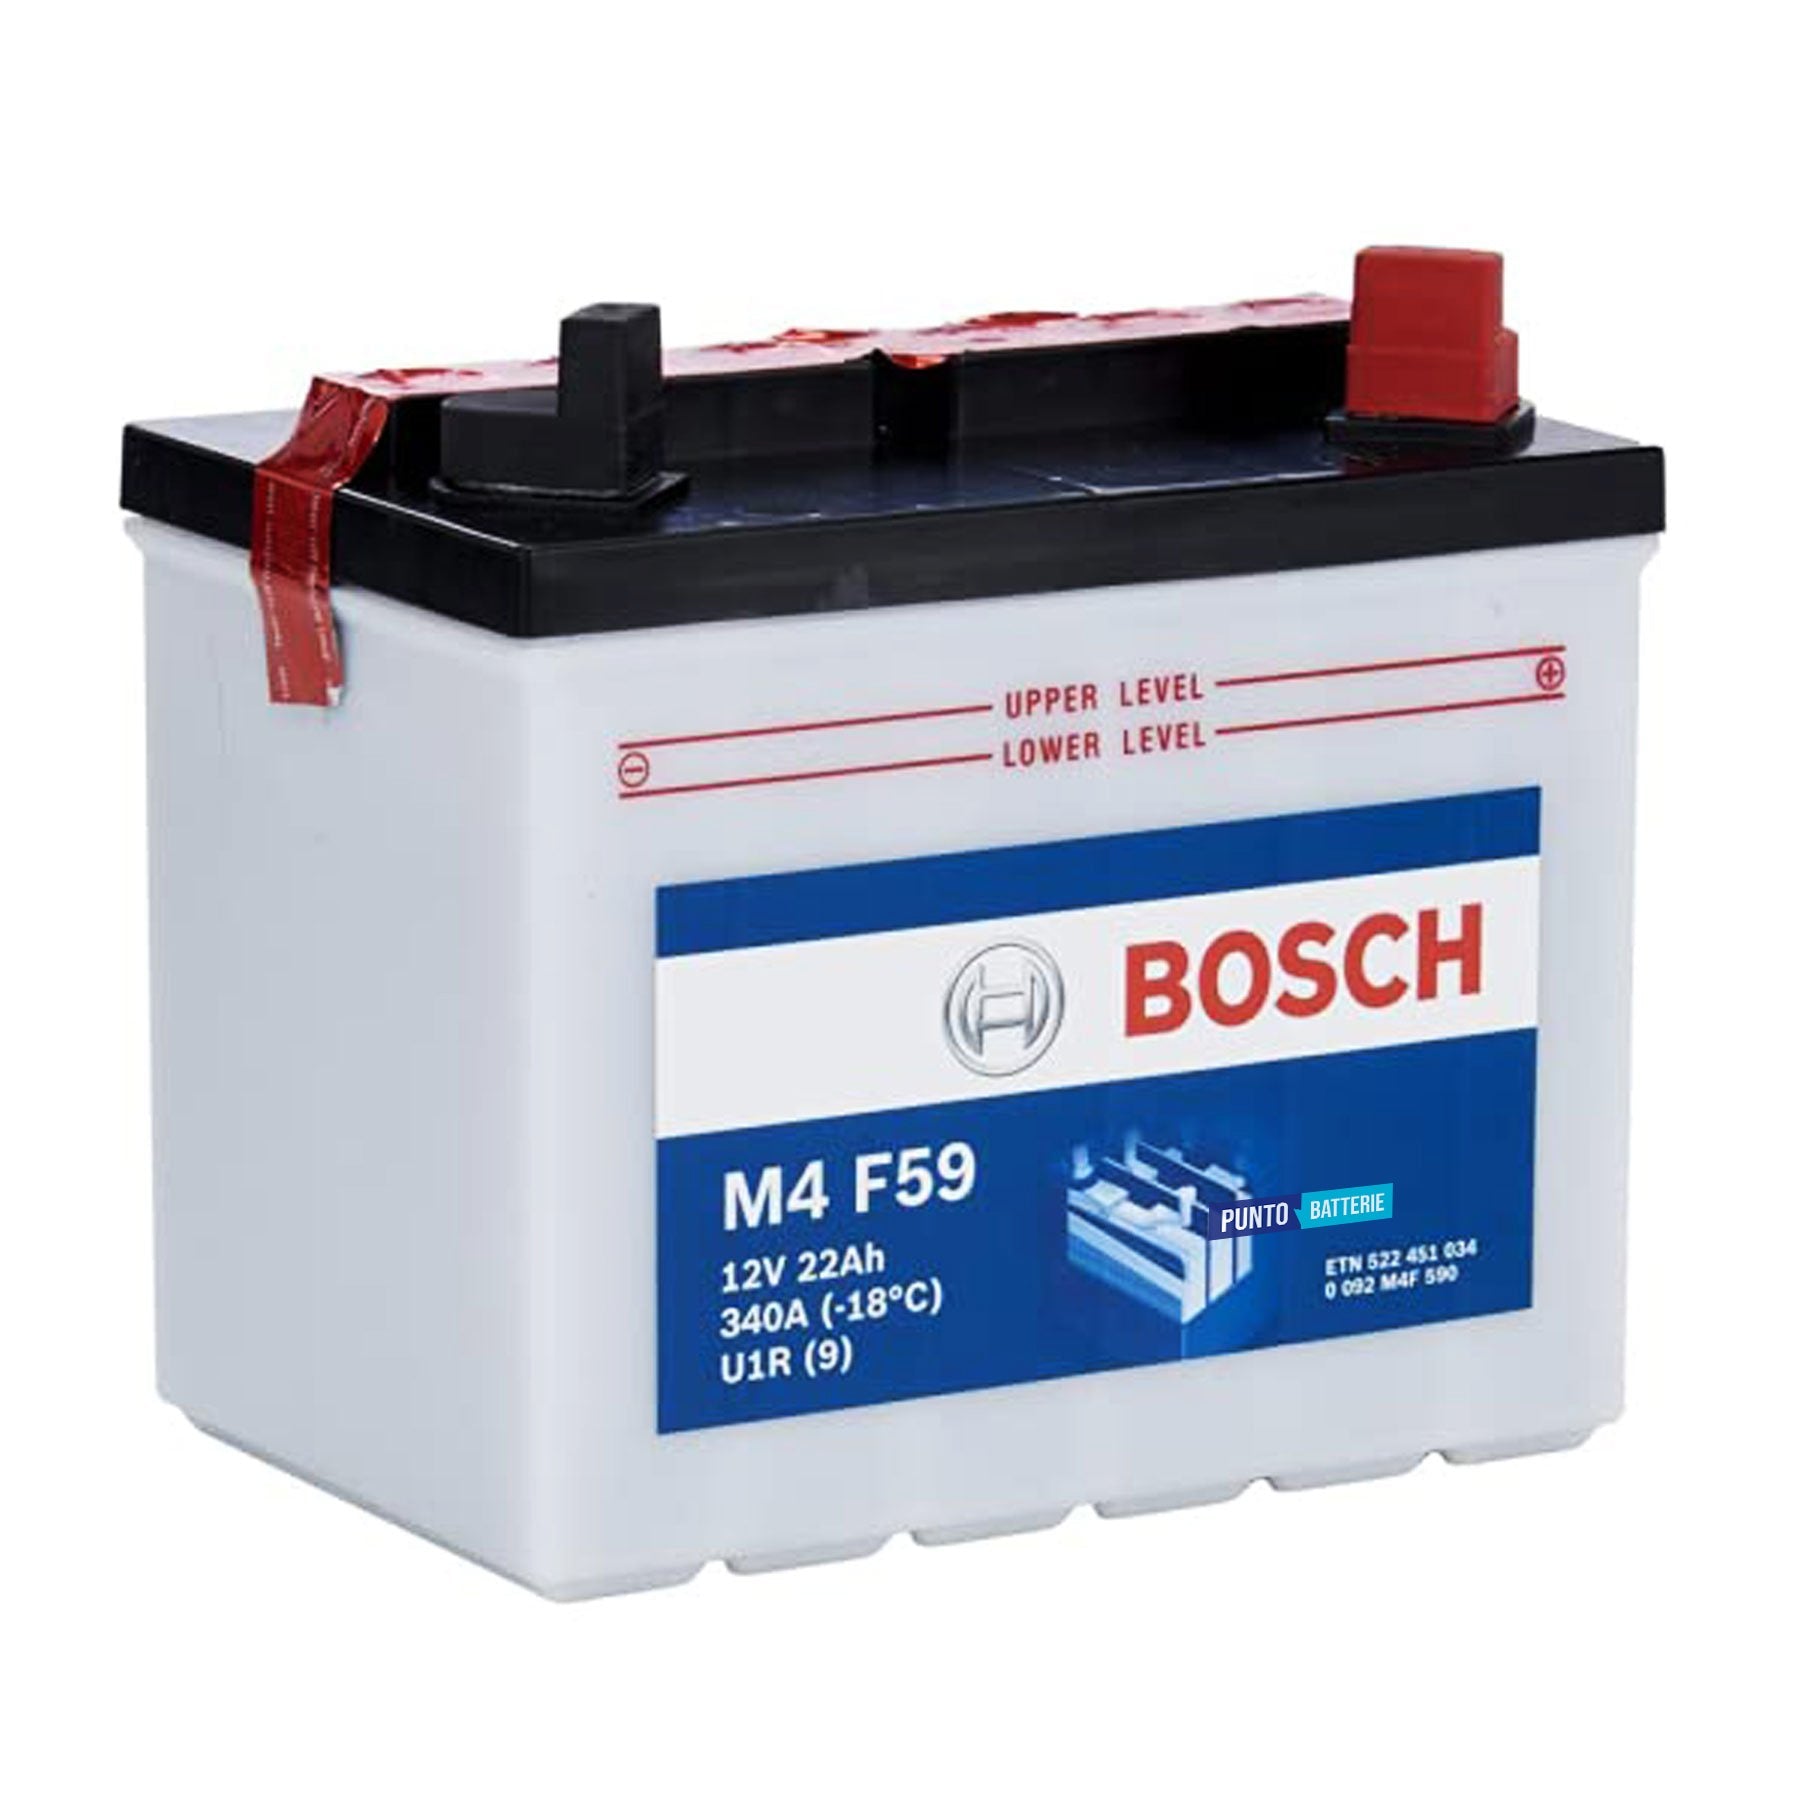 Batteria originale Bosch M4 M4F59, dimensioni 195 x 130 x 180, polo positivo a destra, 12 volt, 22 amperora, 340 ampere. Batteria per trattorino tagliaerba e rasaerba.